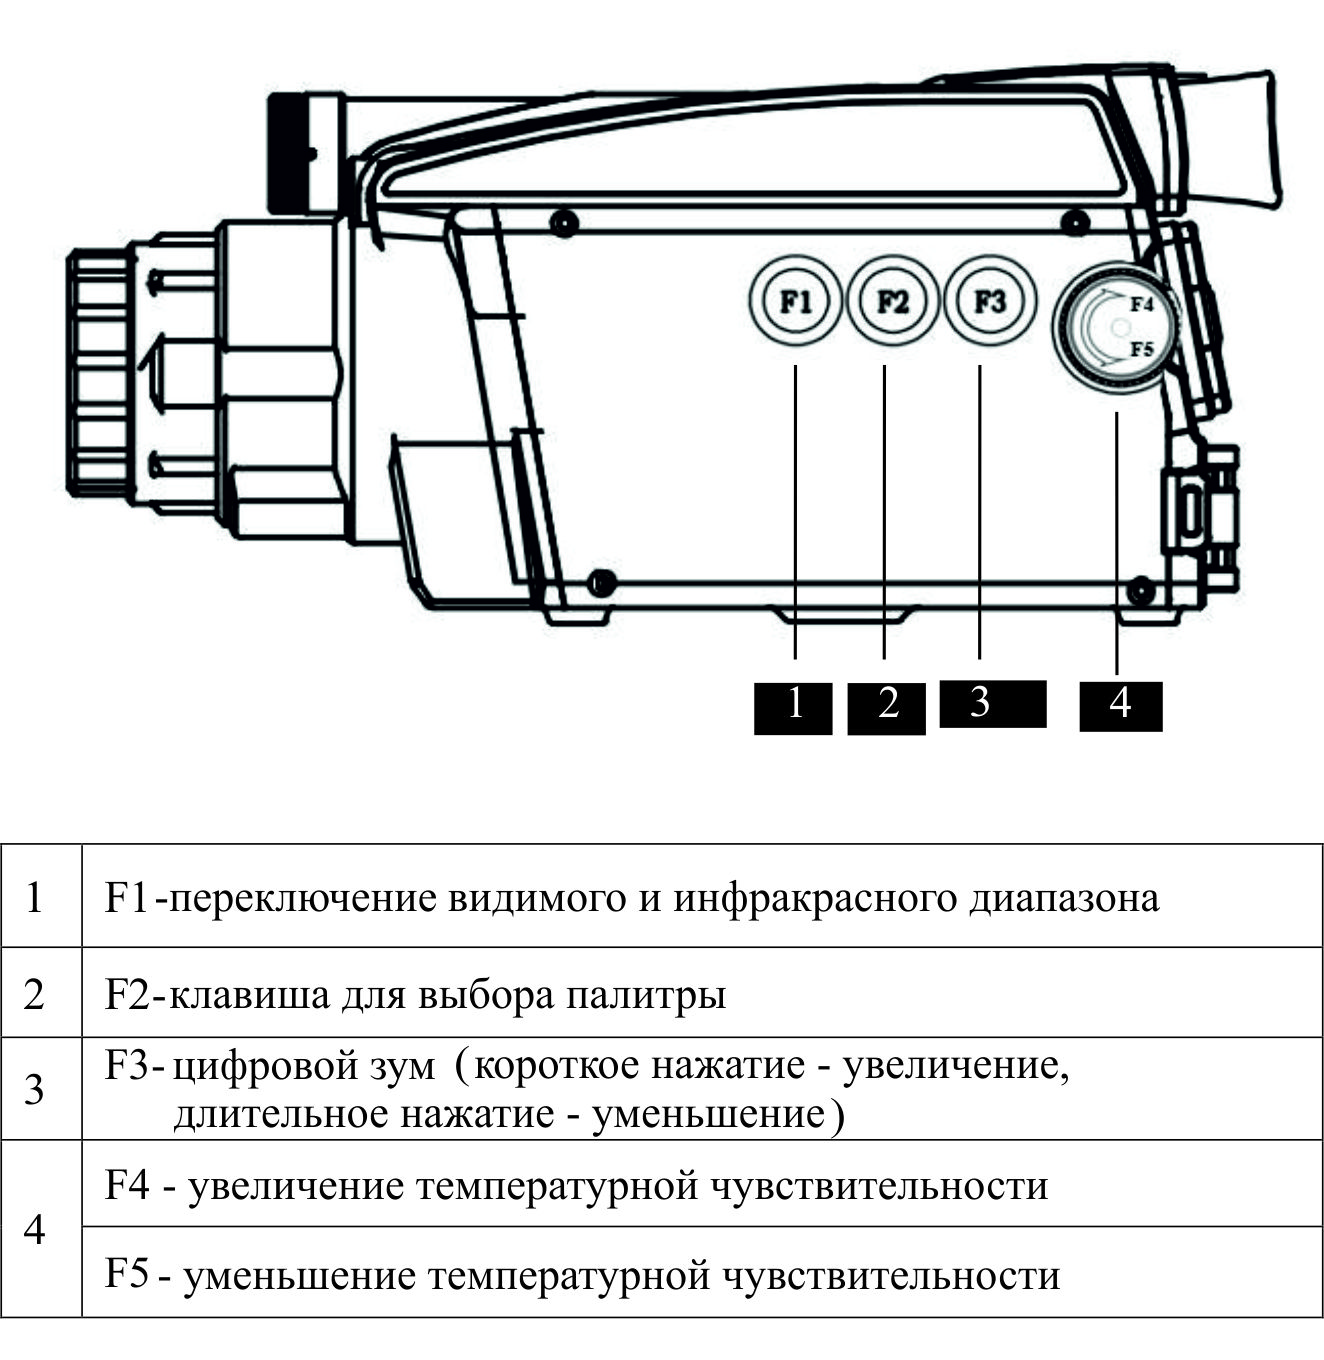 Боковой вид газодетекторной тепловизионной камеры V80/90